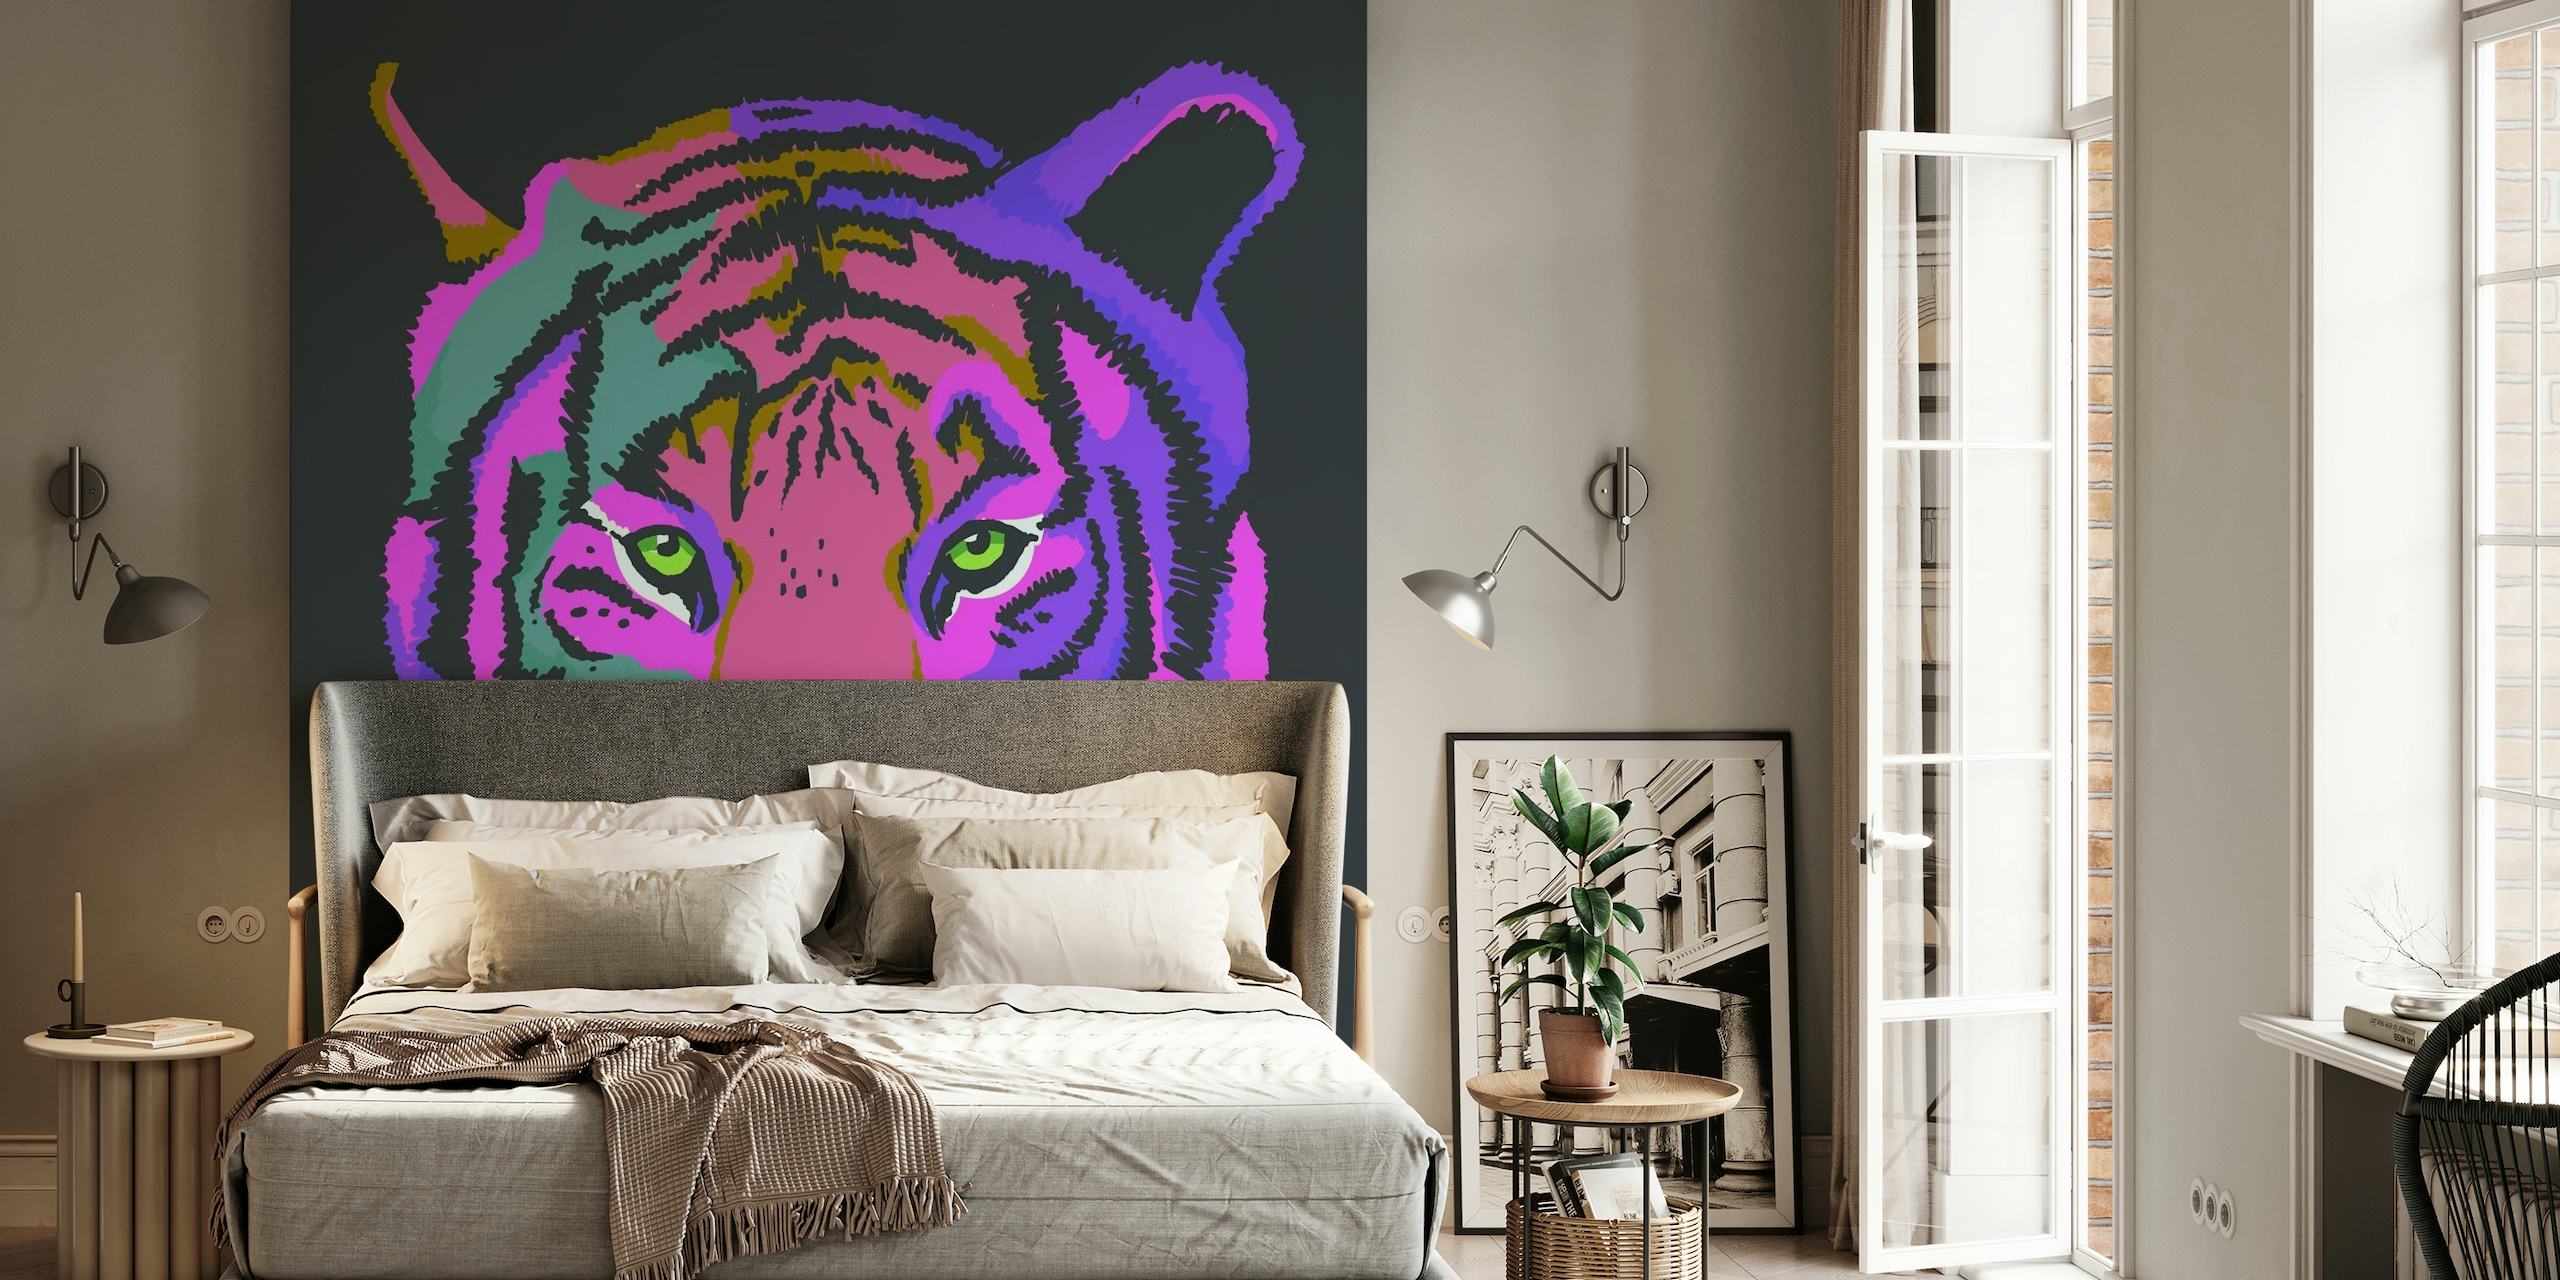 En färgglad tapet med en stiliserad tiger i nyanser av lila och rosa mot en mörk bakgrund.